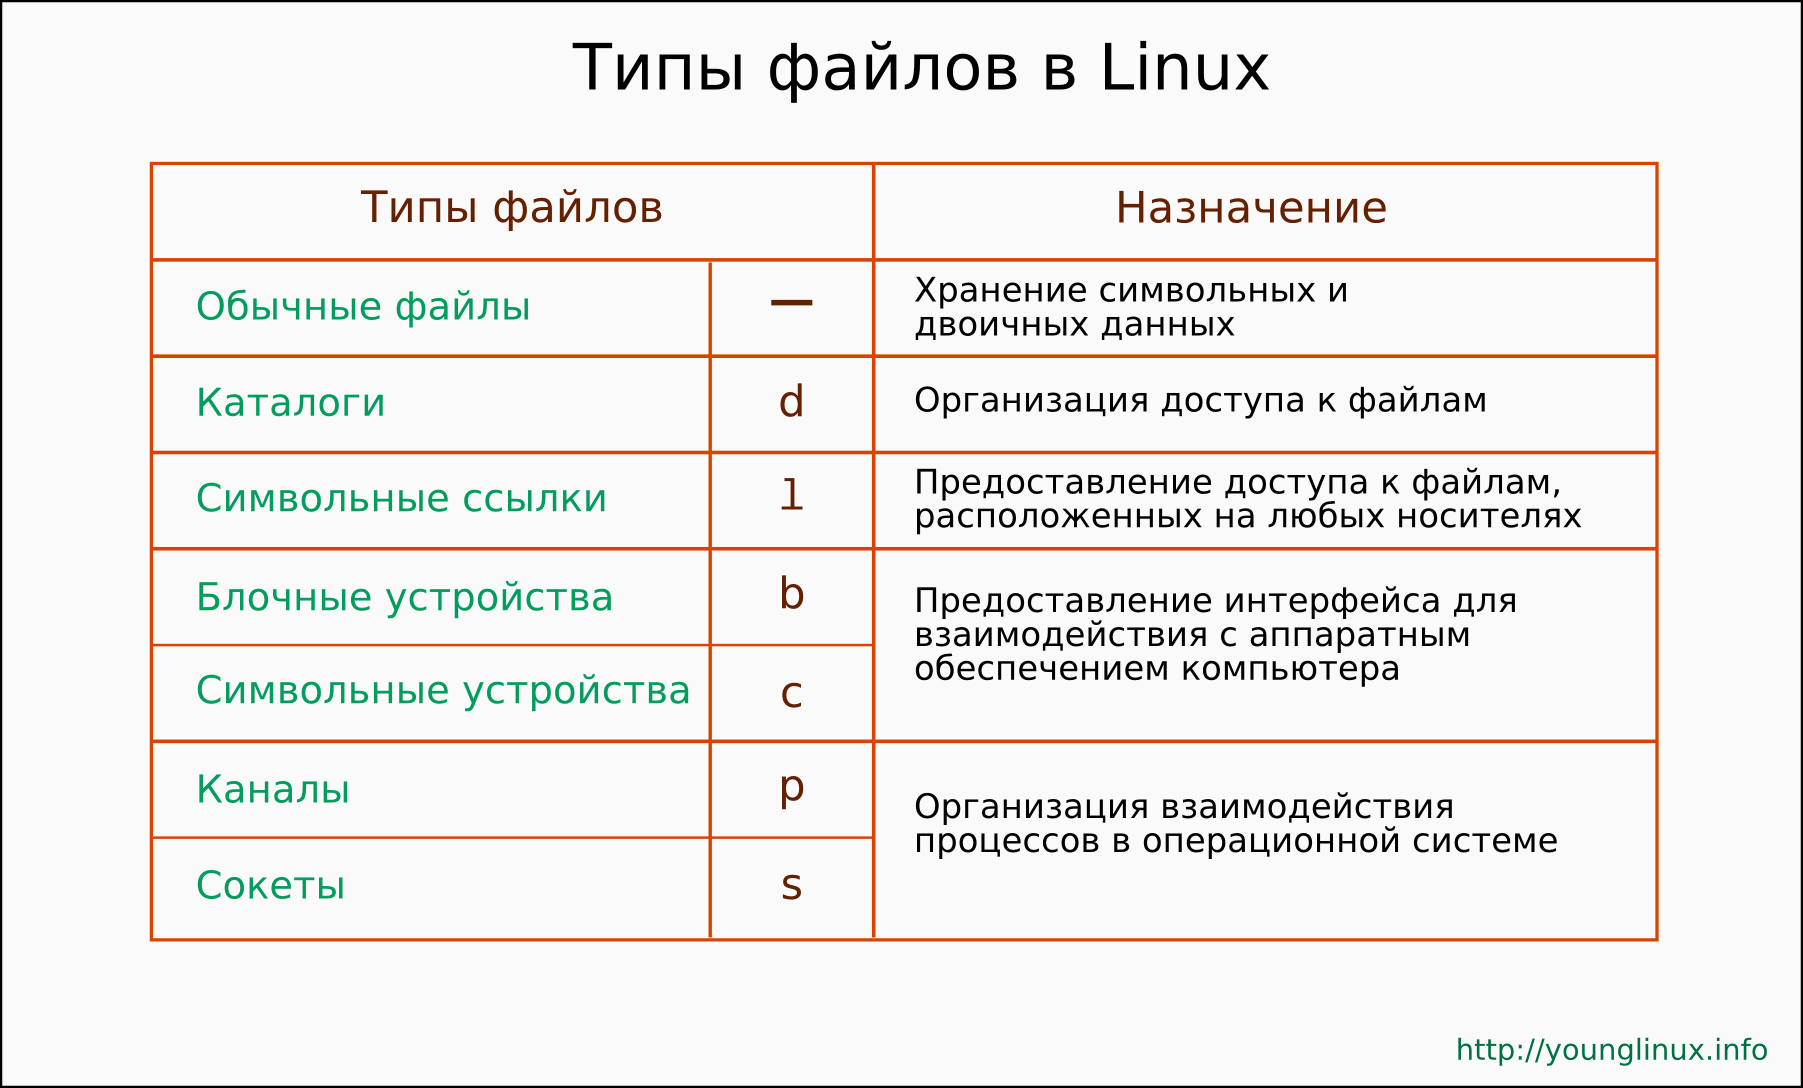 Как удалить файл в linux через терминал (ubuntu, debian и т.д.)